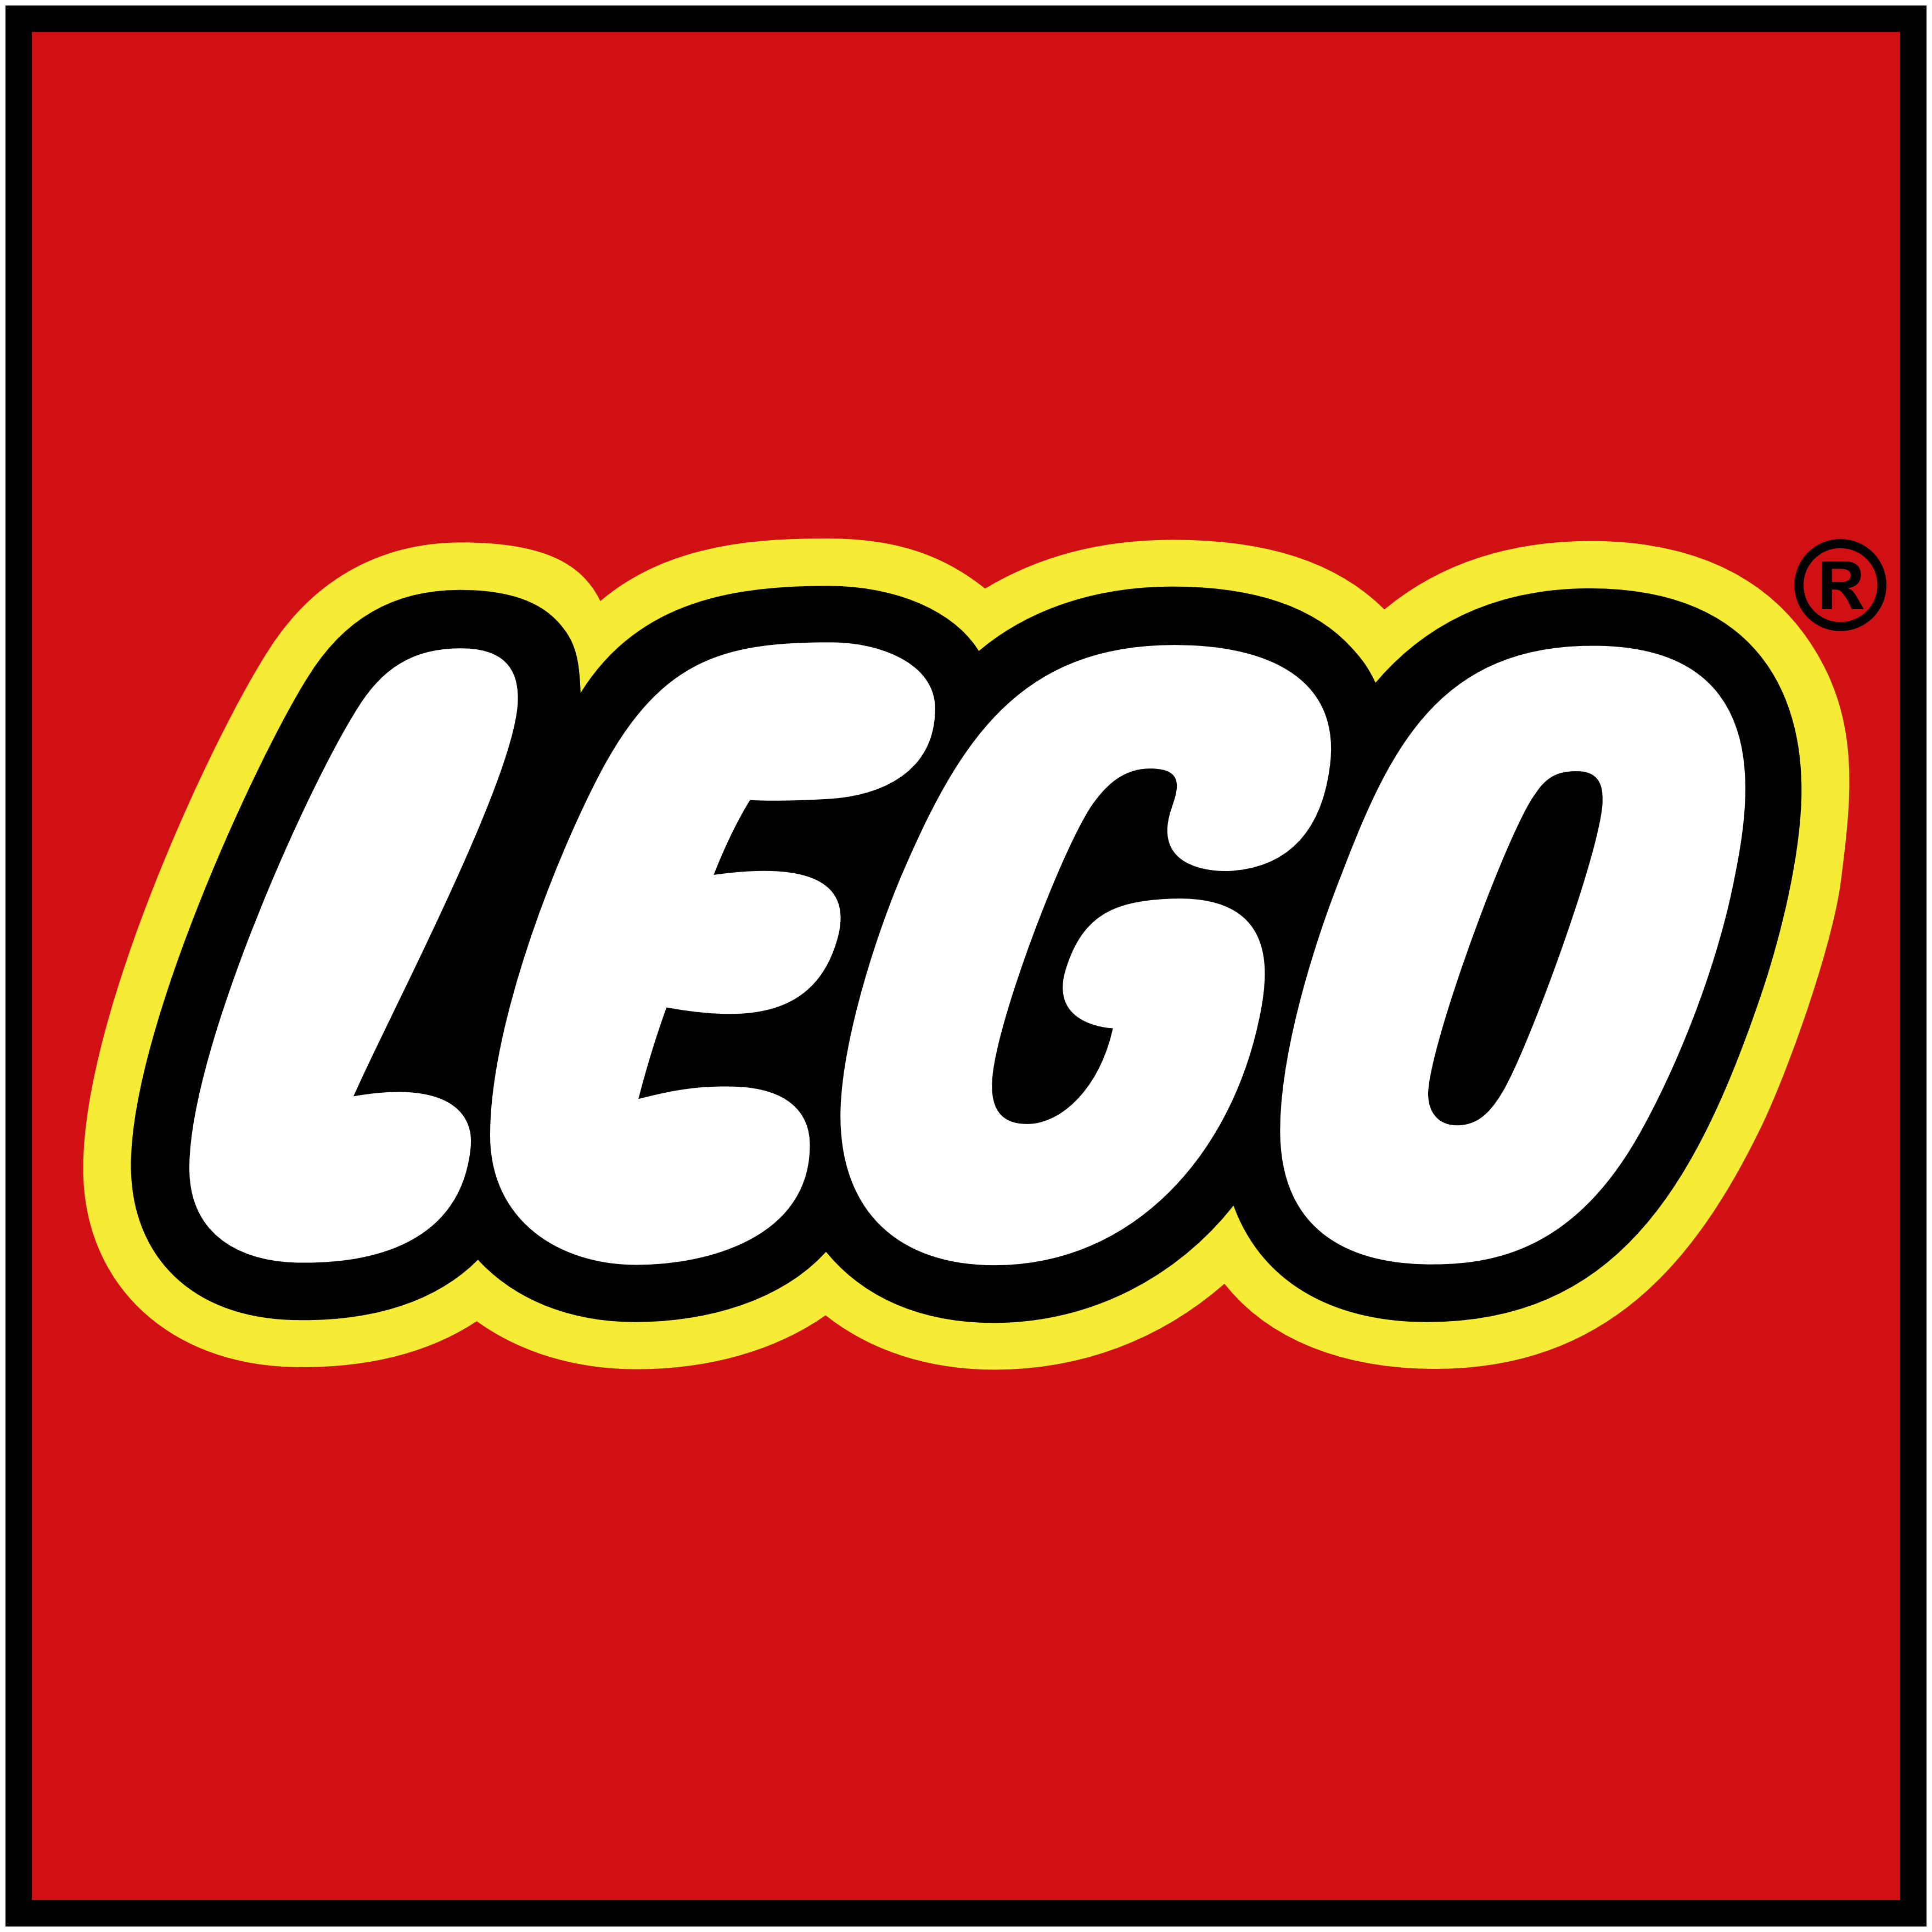 Lego logo, logotype